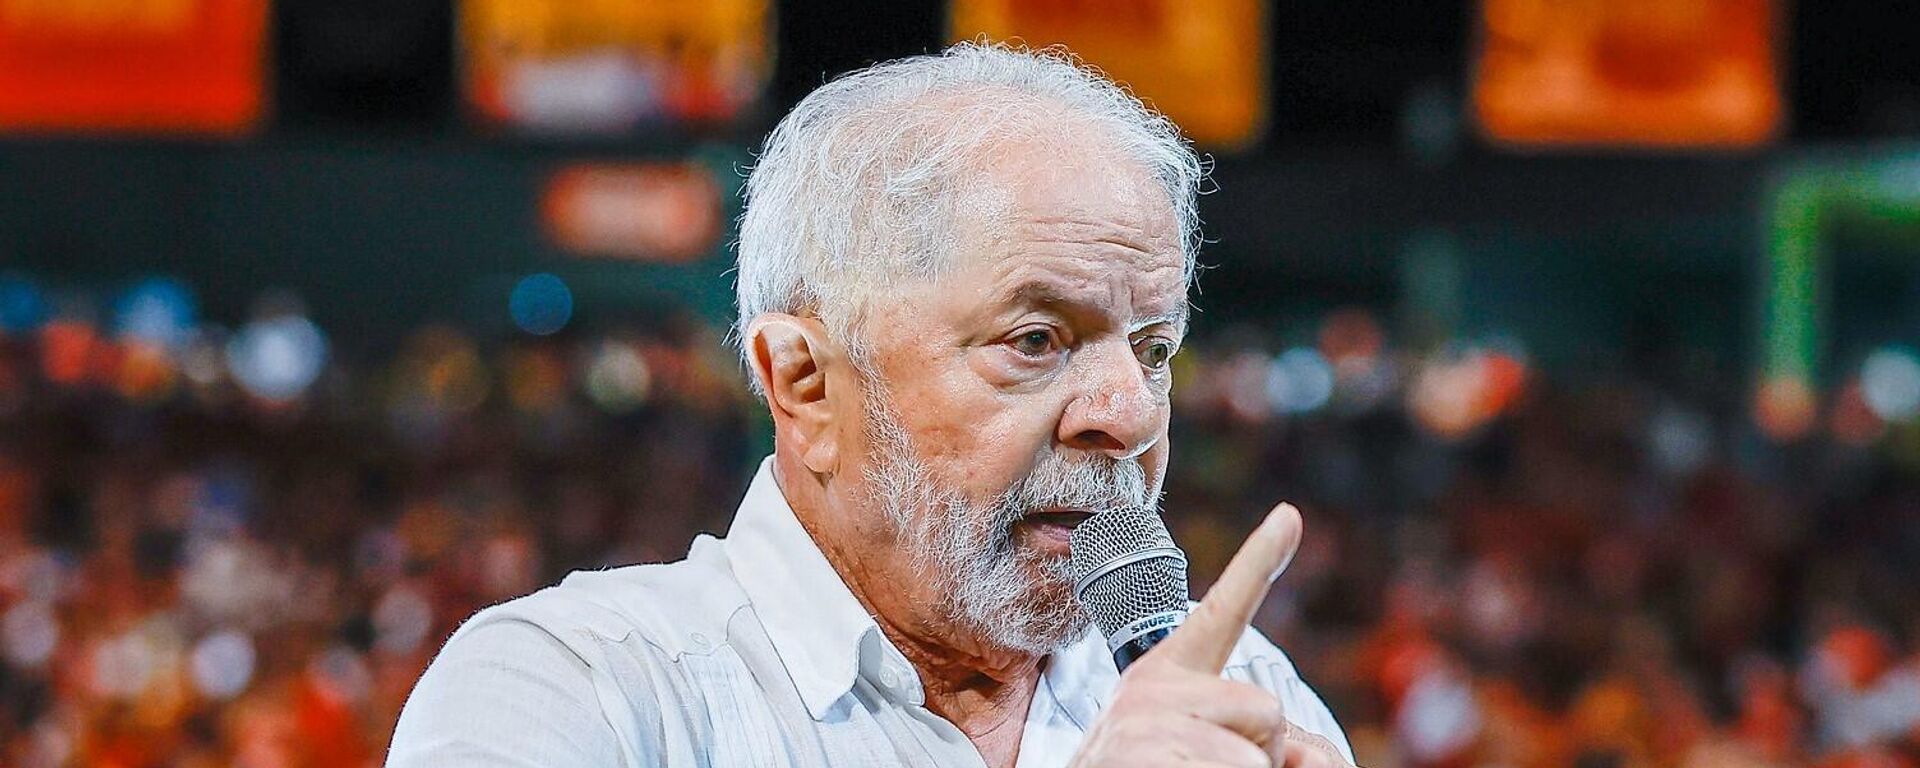 O ex-presidente Luiz Inácio Lula da Silva (PT) durante ato em Pernambuco - Sputnik Brasil, 1920, 27.07.2022